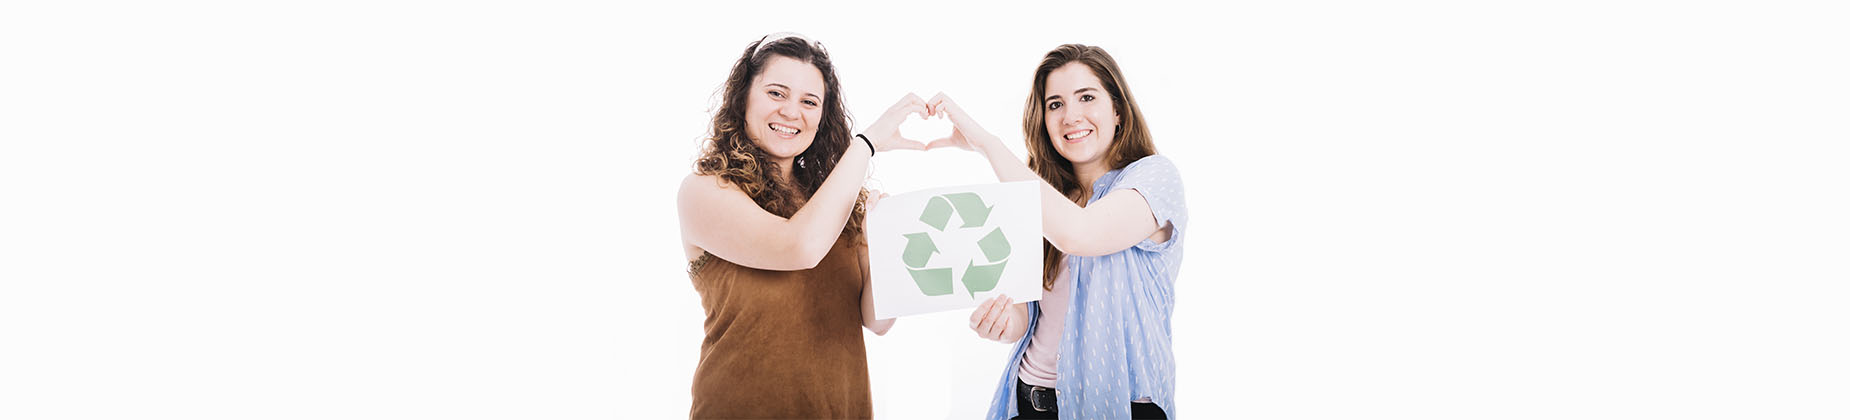 reciclar puede ayudarte con tus finanzas personales